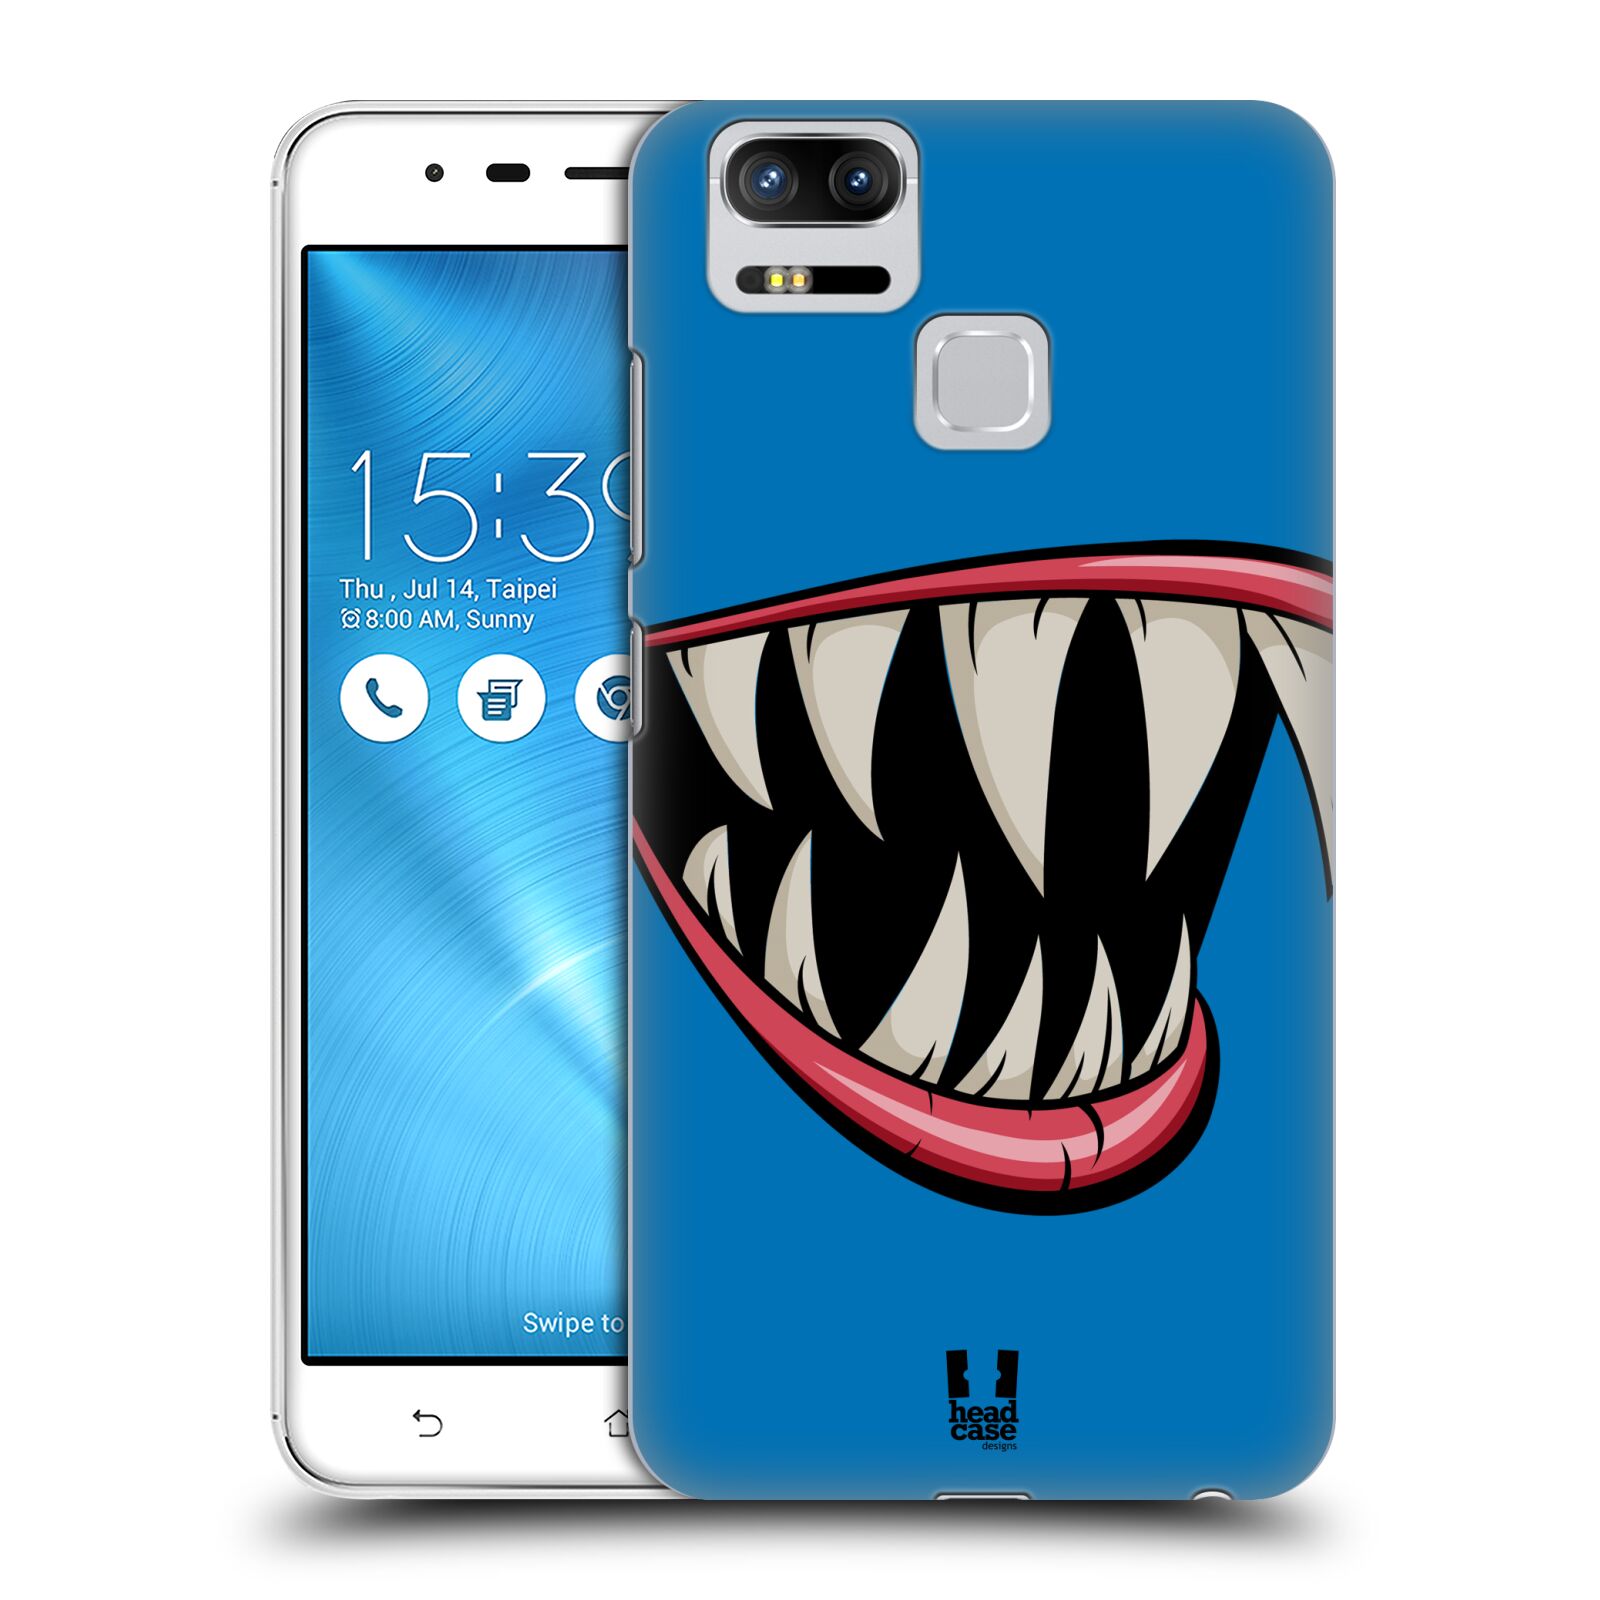 HEAD CASE plastový obal na mobil Asus Zenfone 3 Zoom ZE553KL vzor Zvířecí úsměv ryba modrá